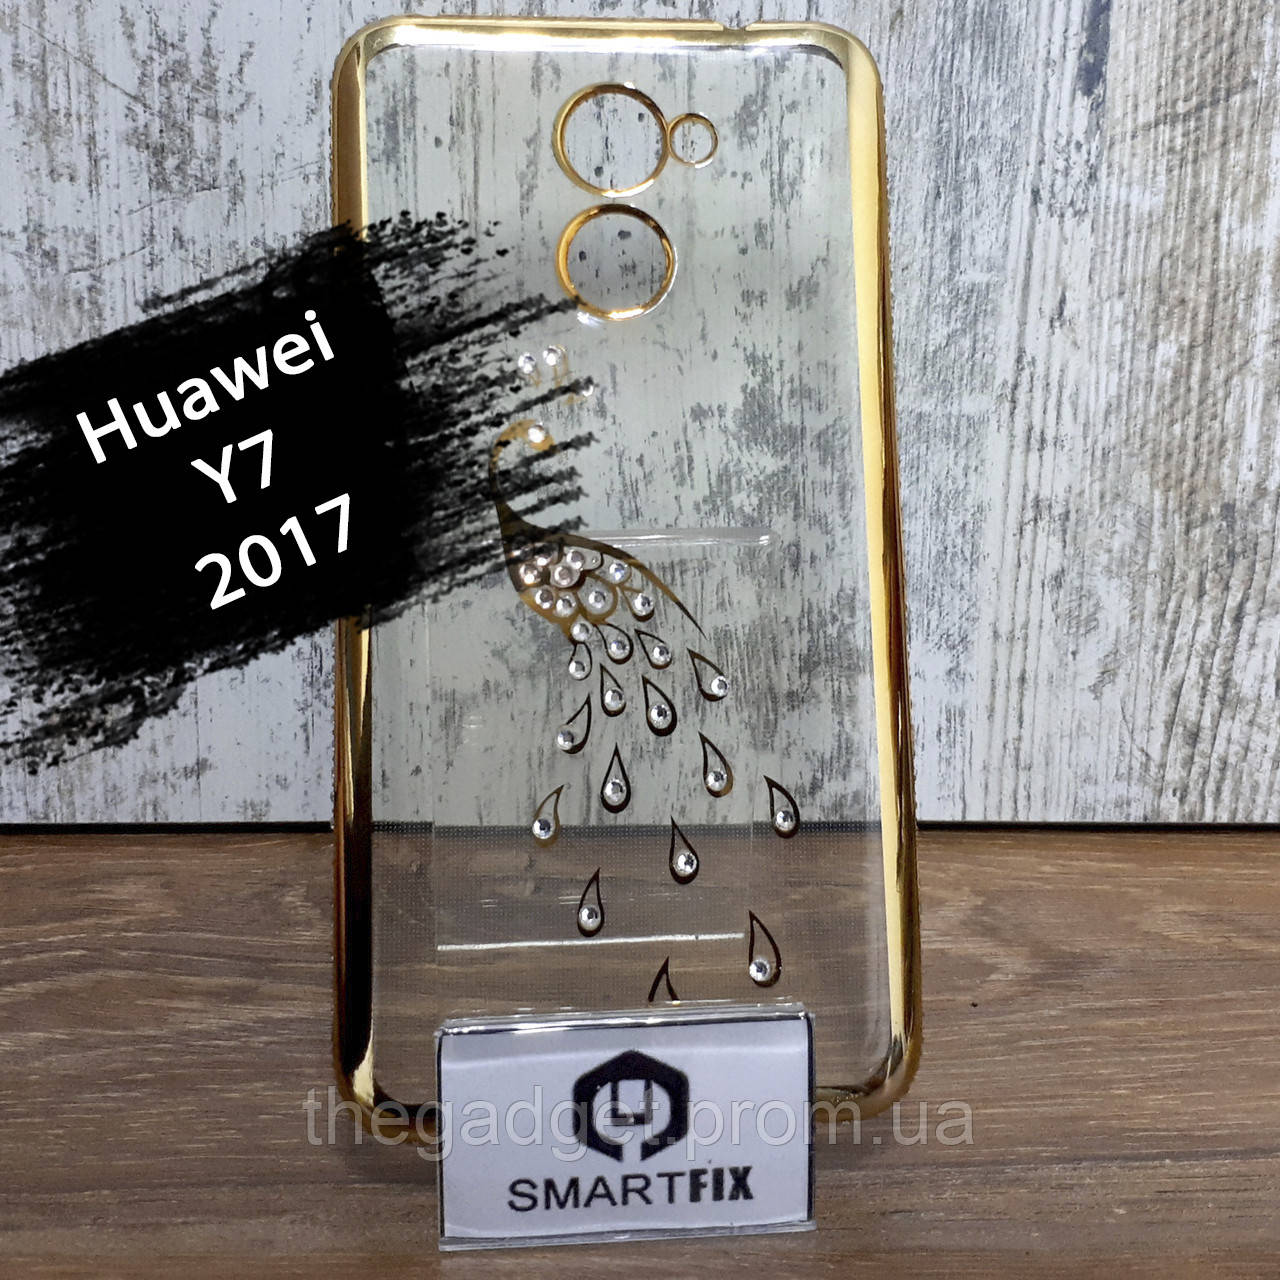 Чехол с рисунком для Huawei Y7 (2017) Золотой